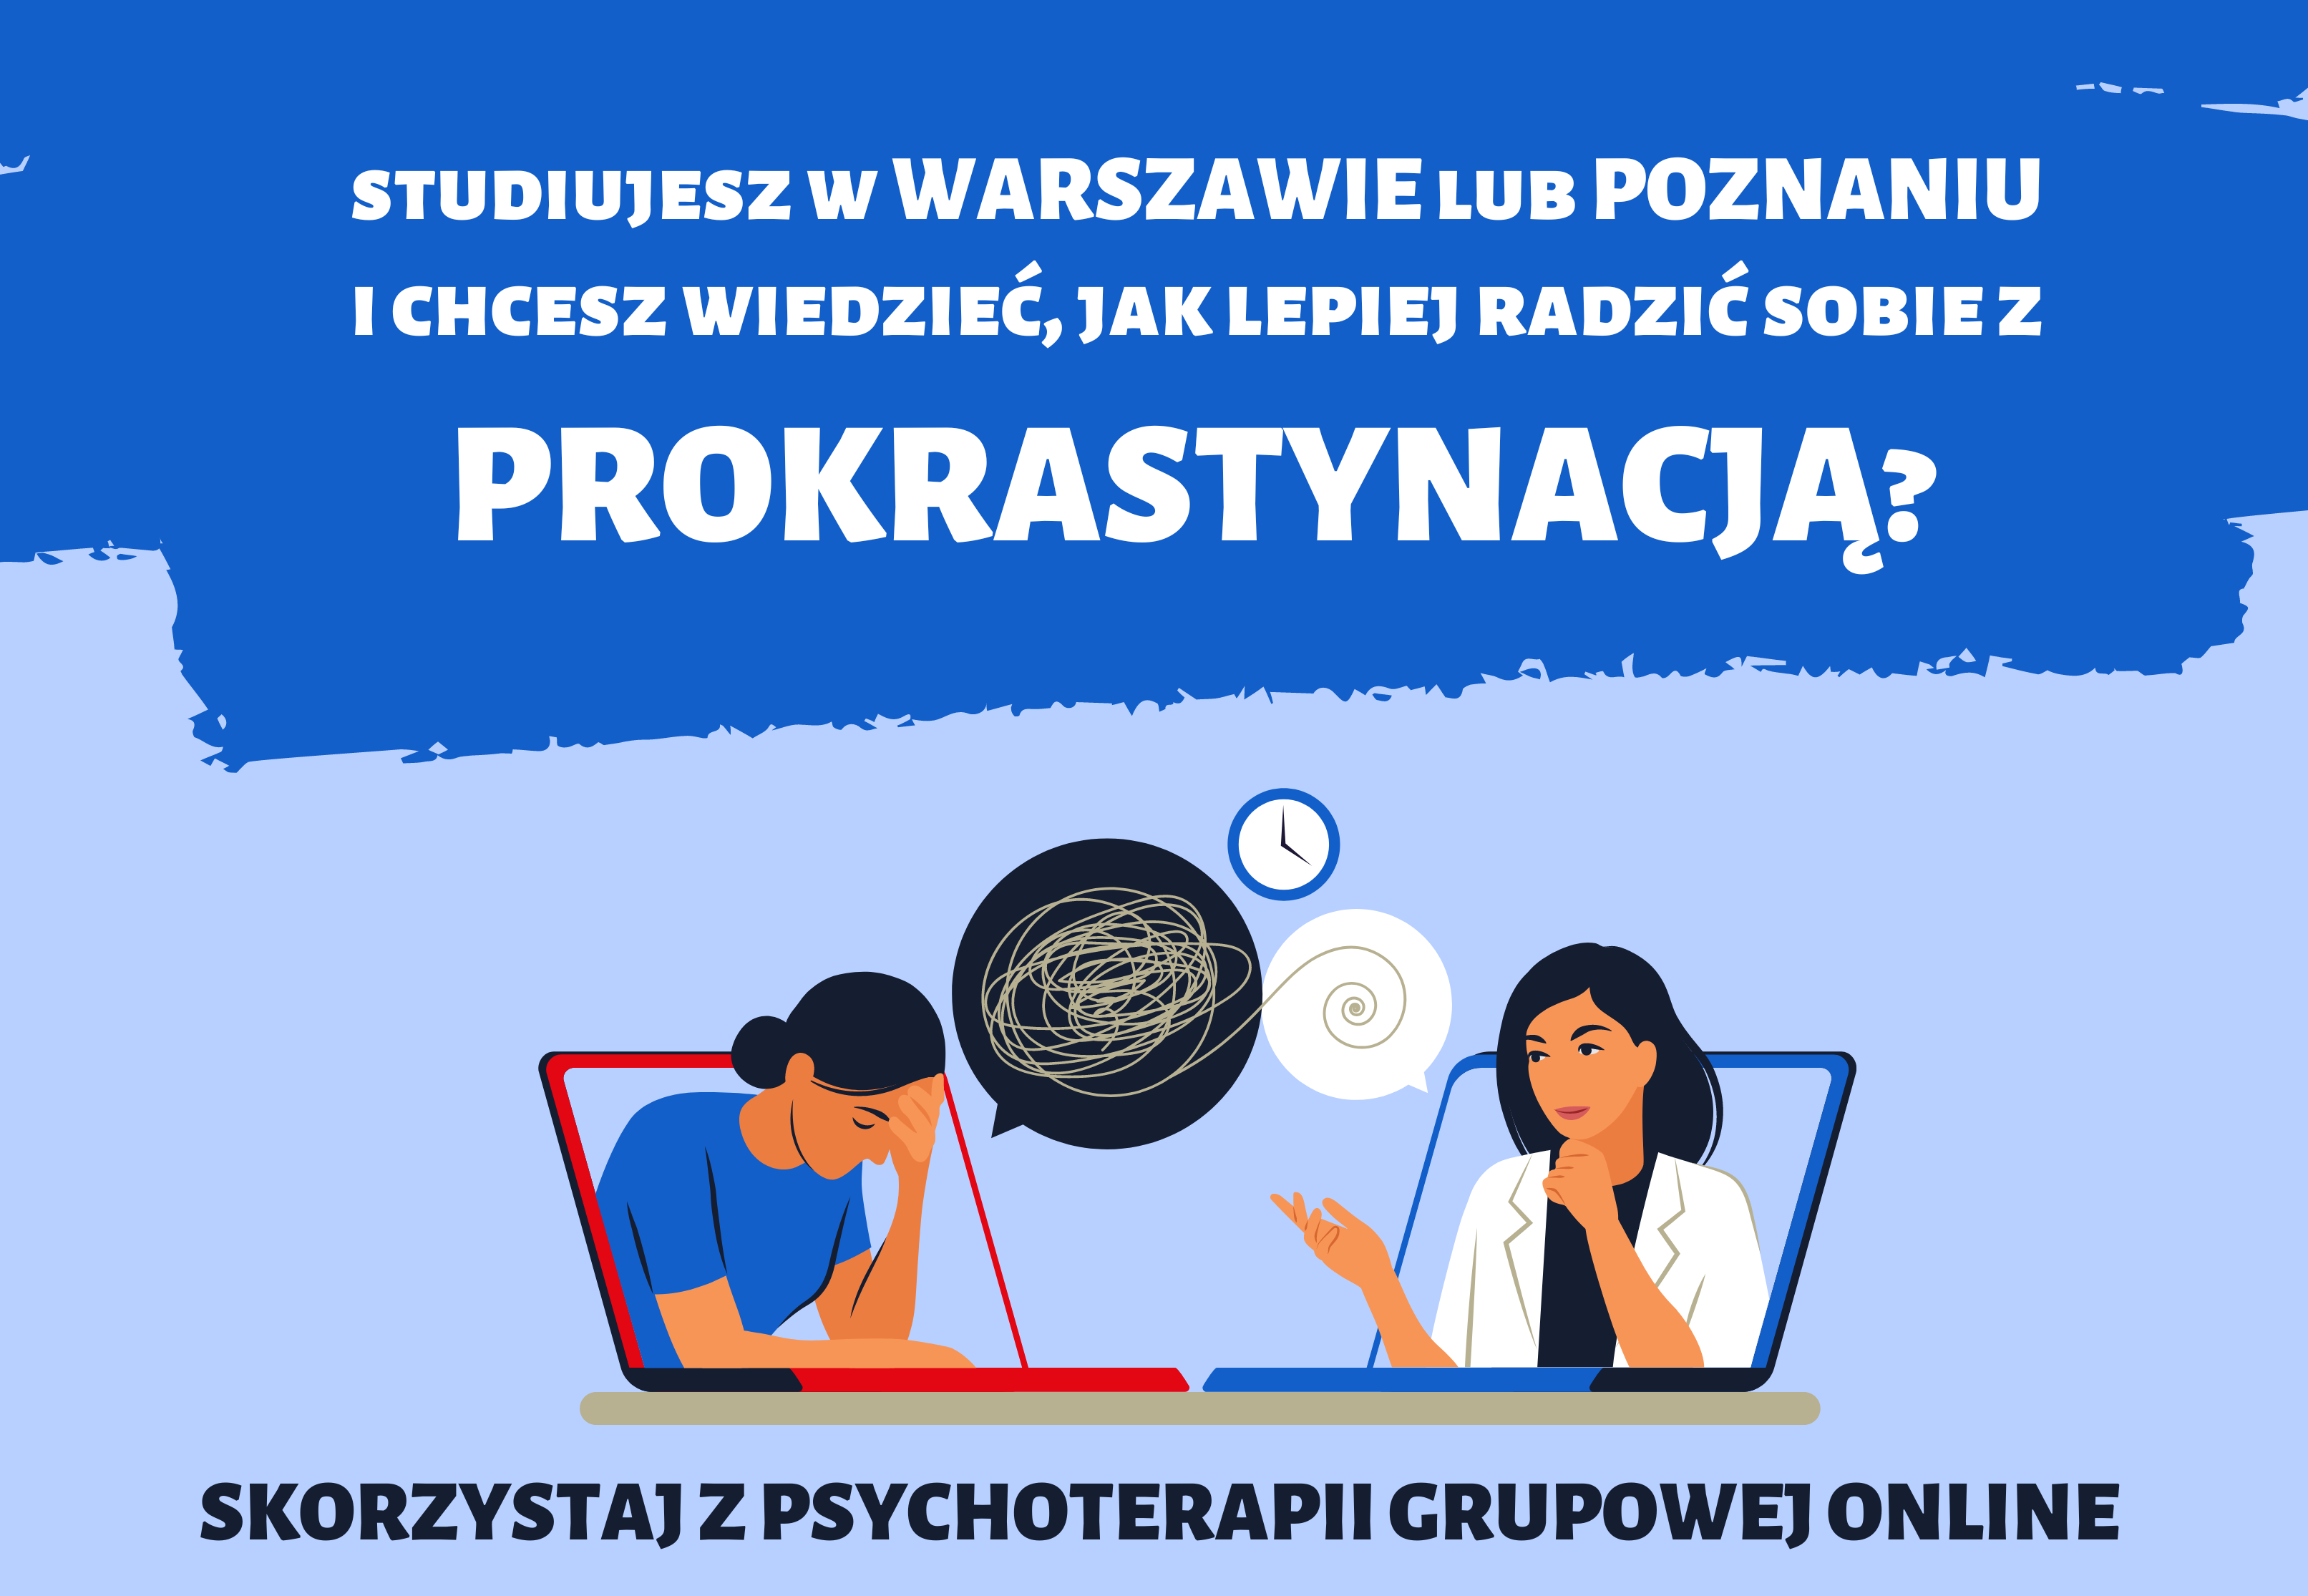 W górnej części zdjęcia jest pytanie: Studiujesz w Warszawie lub Poznaniu i chcesz wiedzieć, jak lepiej radzić sobie z prokrastynacją? Poniżej pytania umieszczony jest wizerunek zastanawiajacych się dwóch kobiet, a na samym dole zdjęcia tekst  - skorzystaj z psychoterapii grupowej online